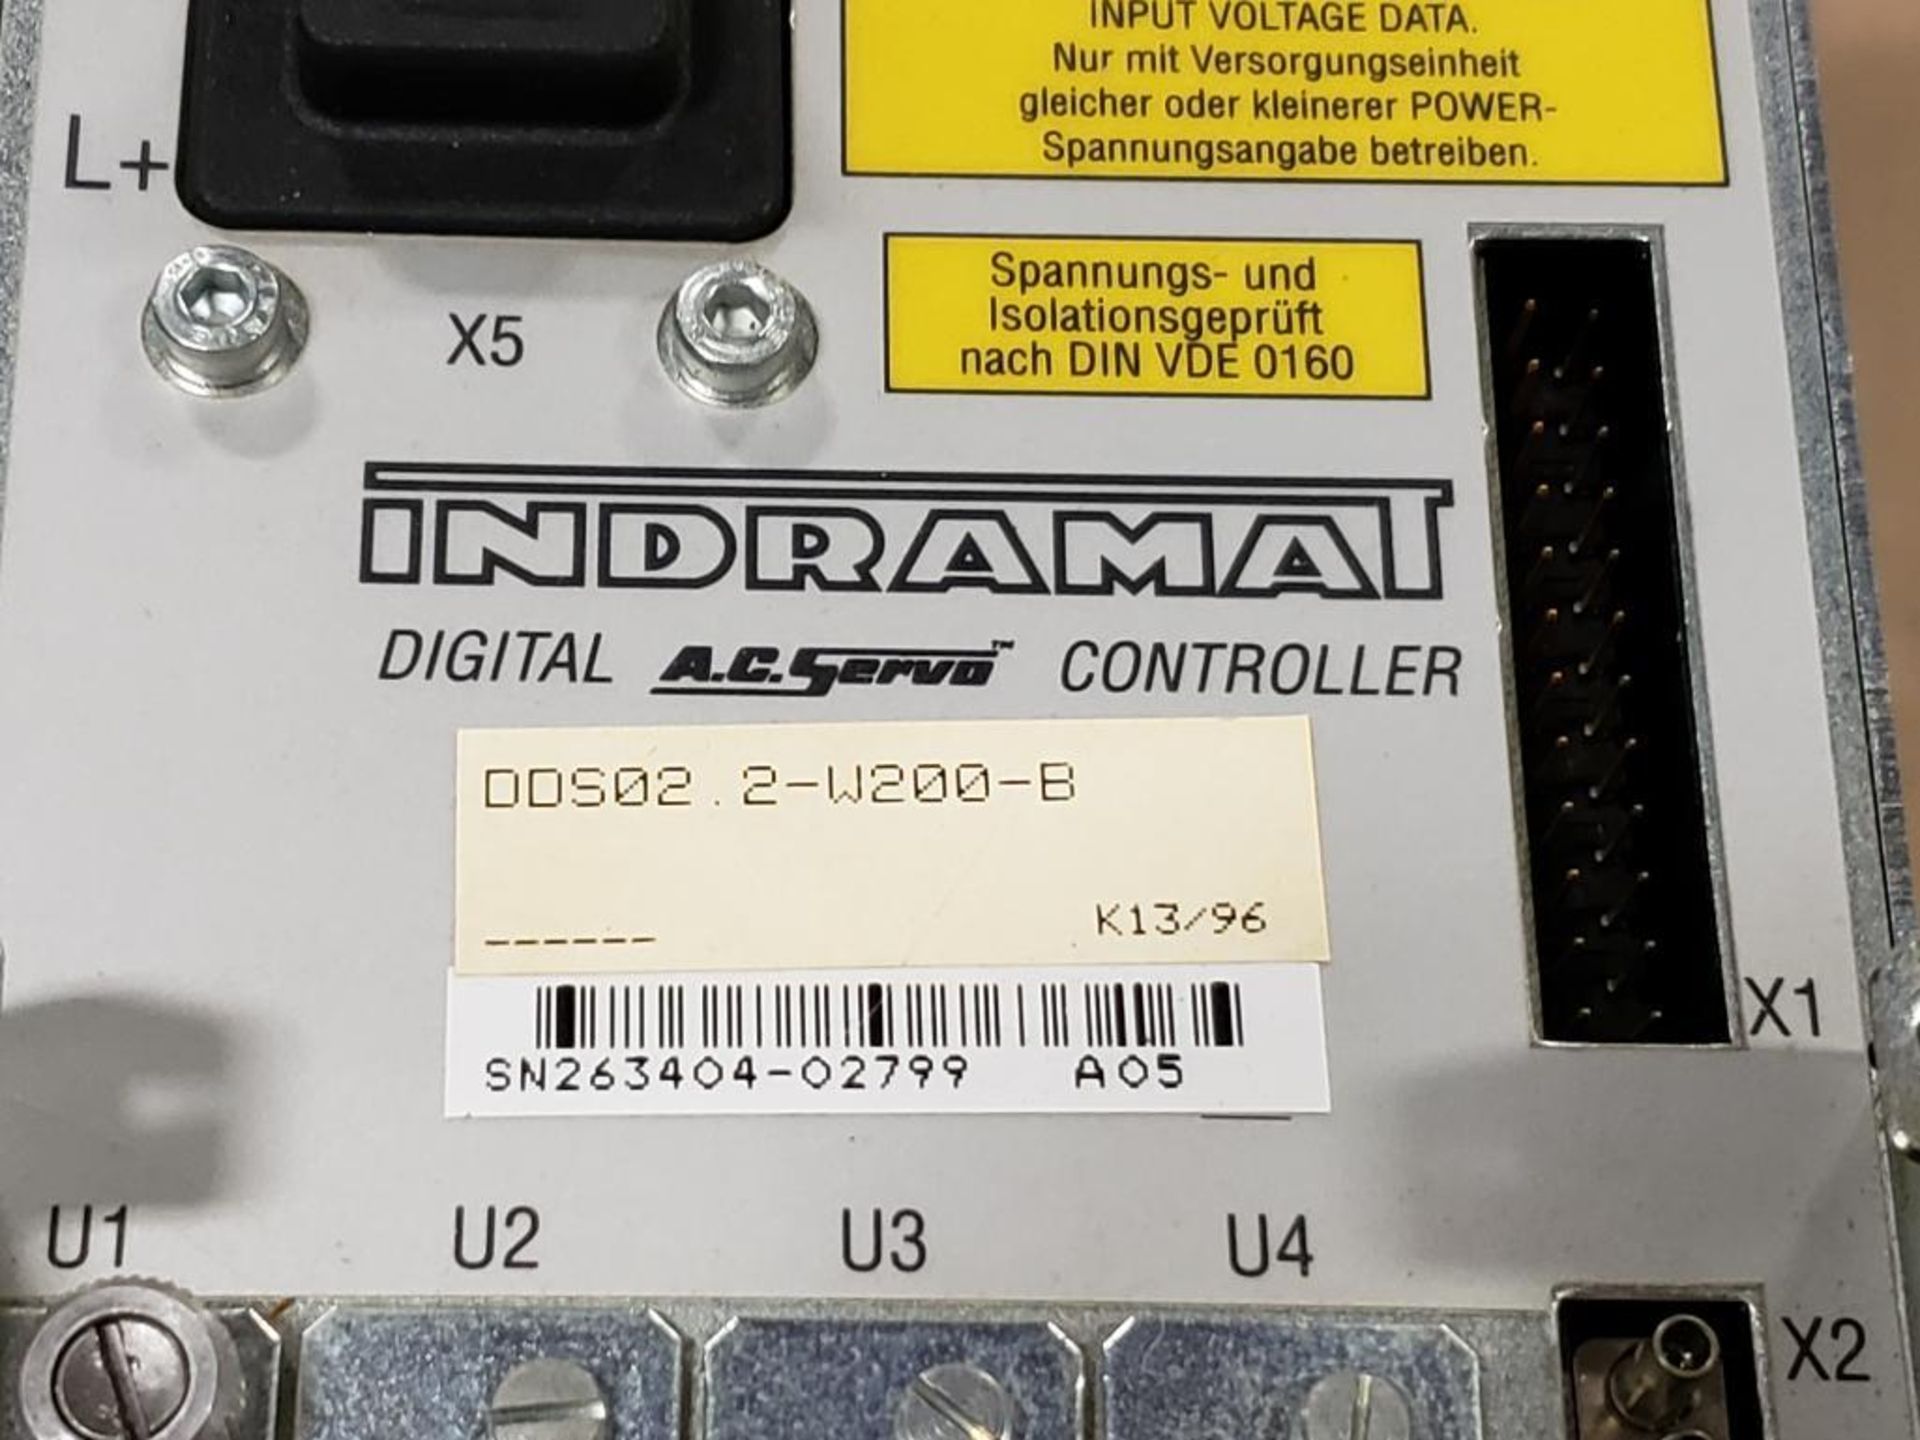 Indramat DDS02.2-W200-B digital AC servo controller. W/ FWC-DSM2.3-ELS-03V31-MS firmware module. - Image 4 of 6